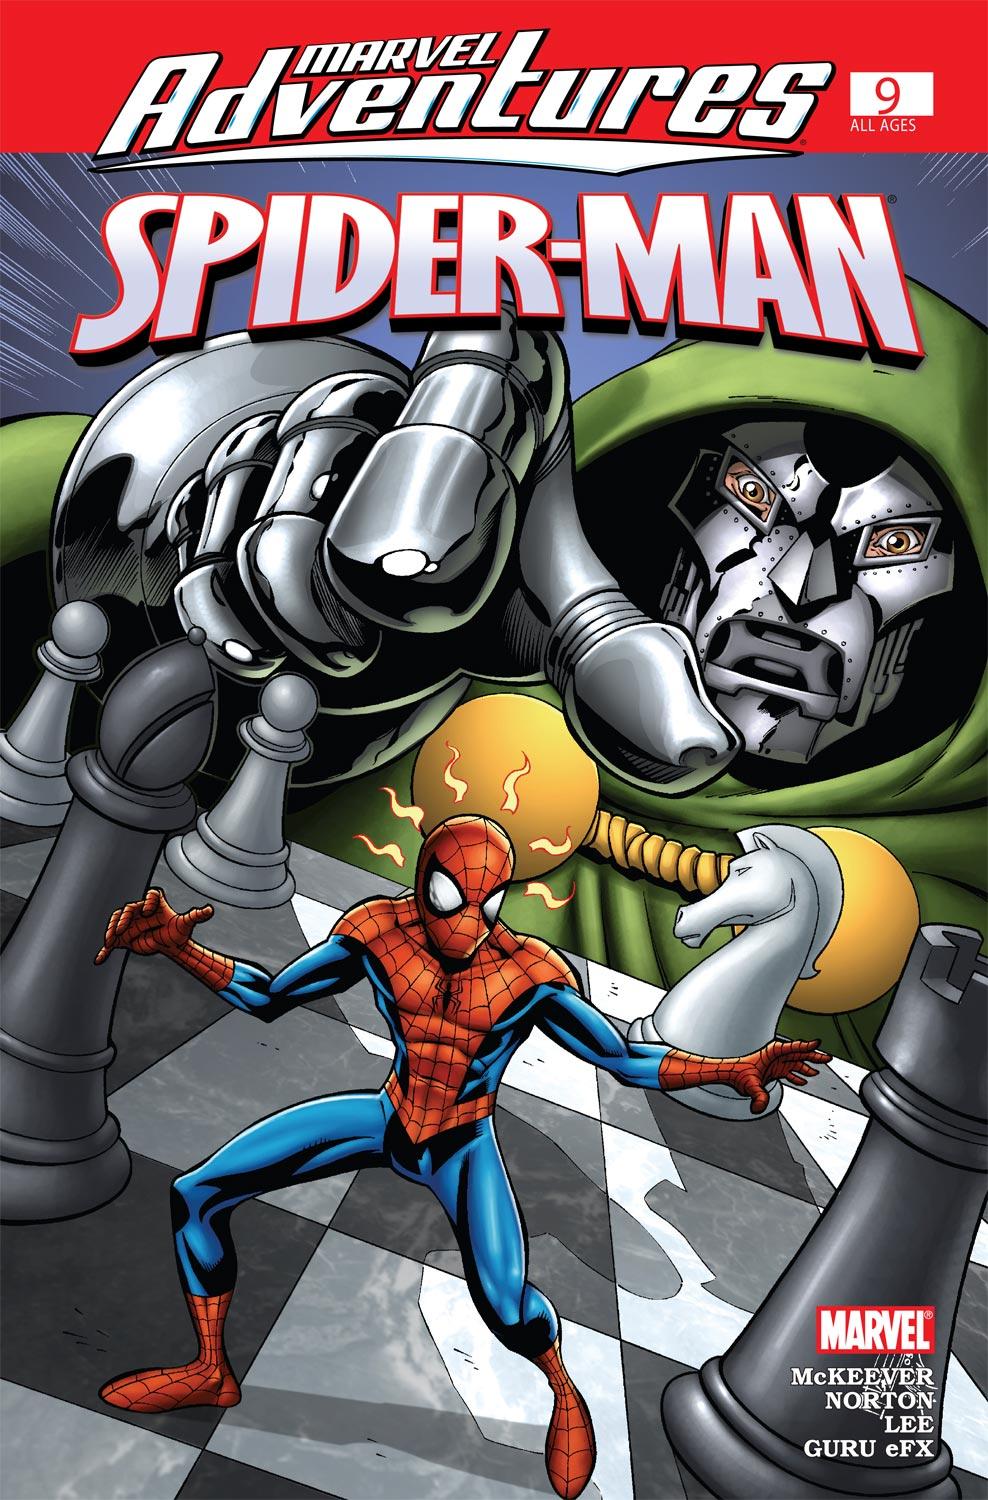 Marvel Adventures Spider-Man (2005) #9